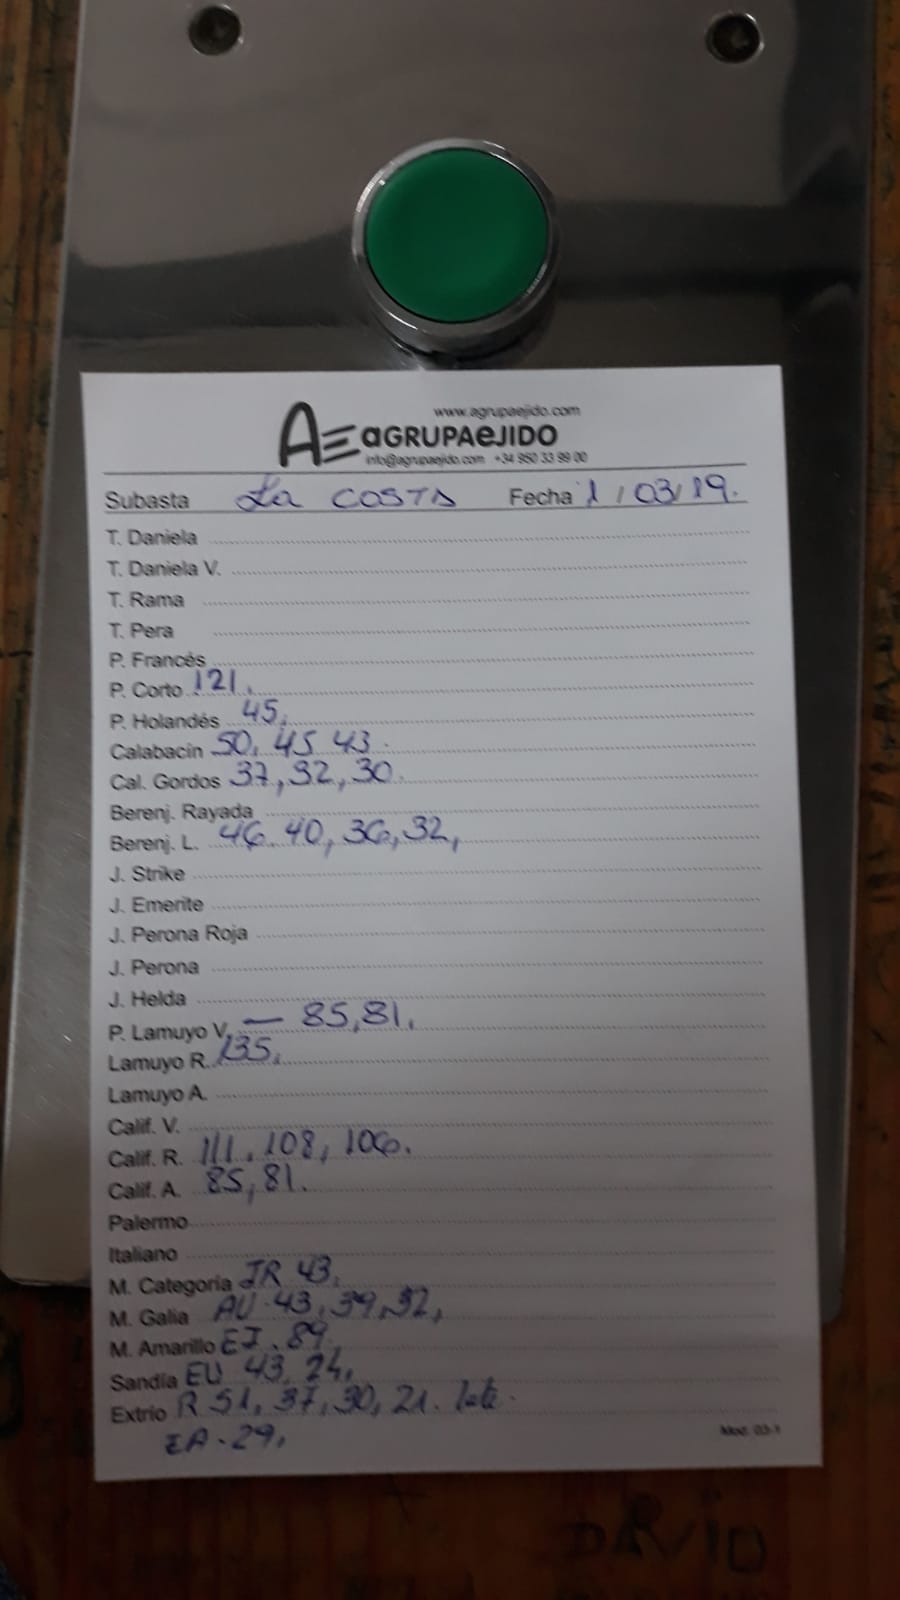 Subasta hortofrutícola AgrupaEjido La Costa 1 de Marzo 2019